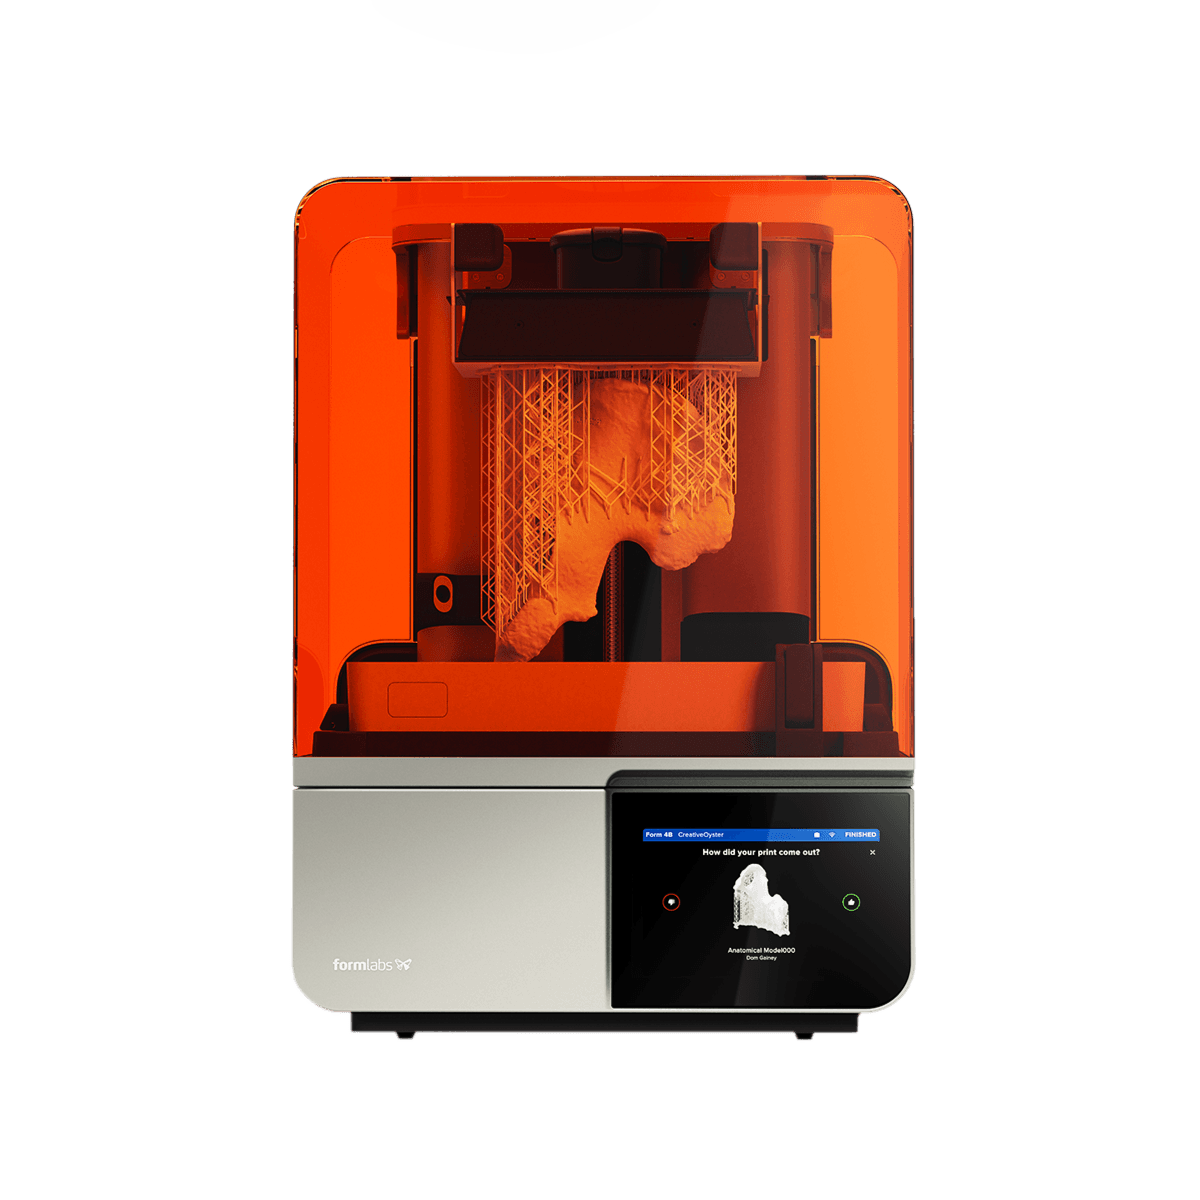 Impresora 3D Form 4B